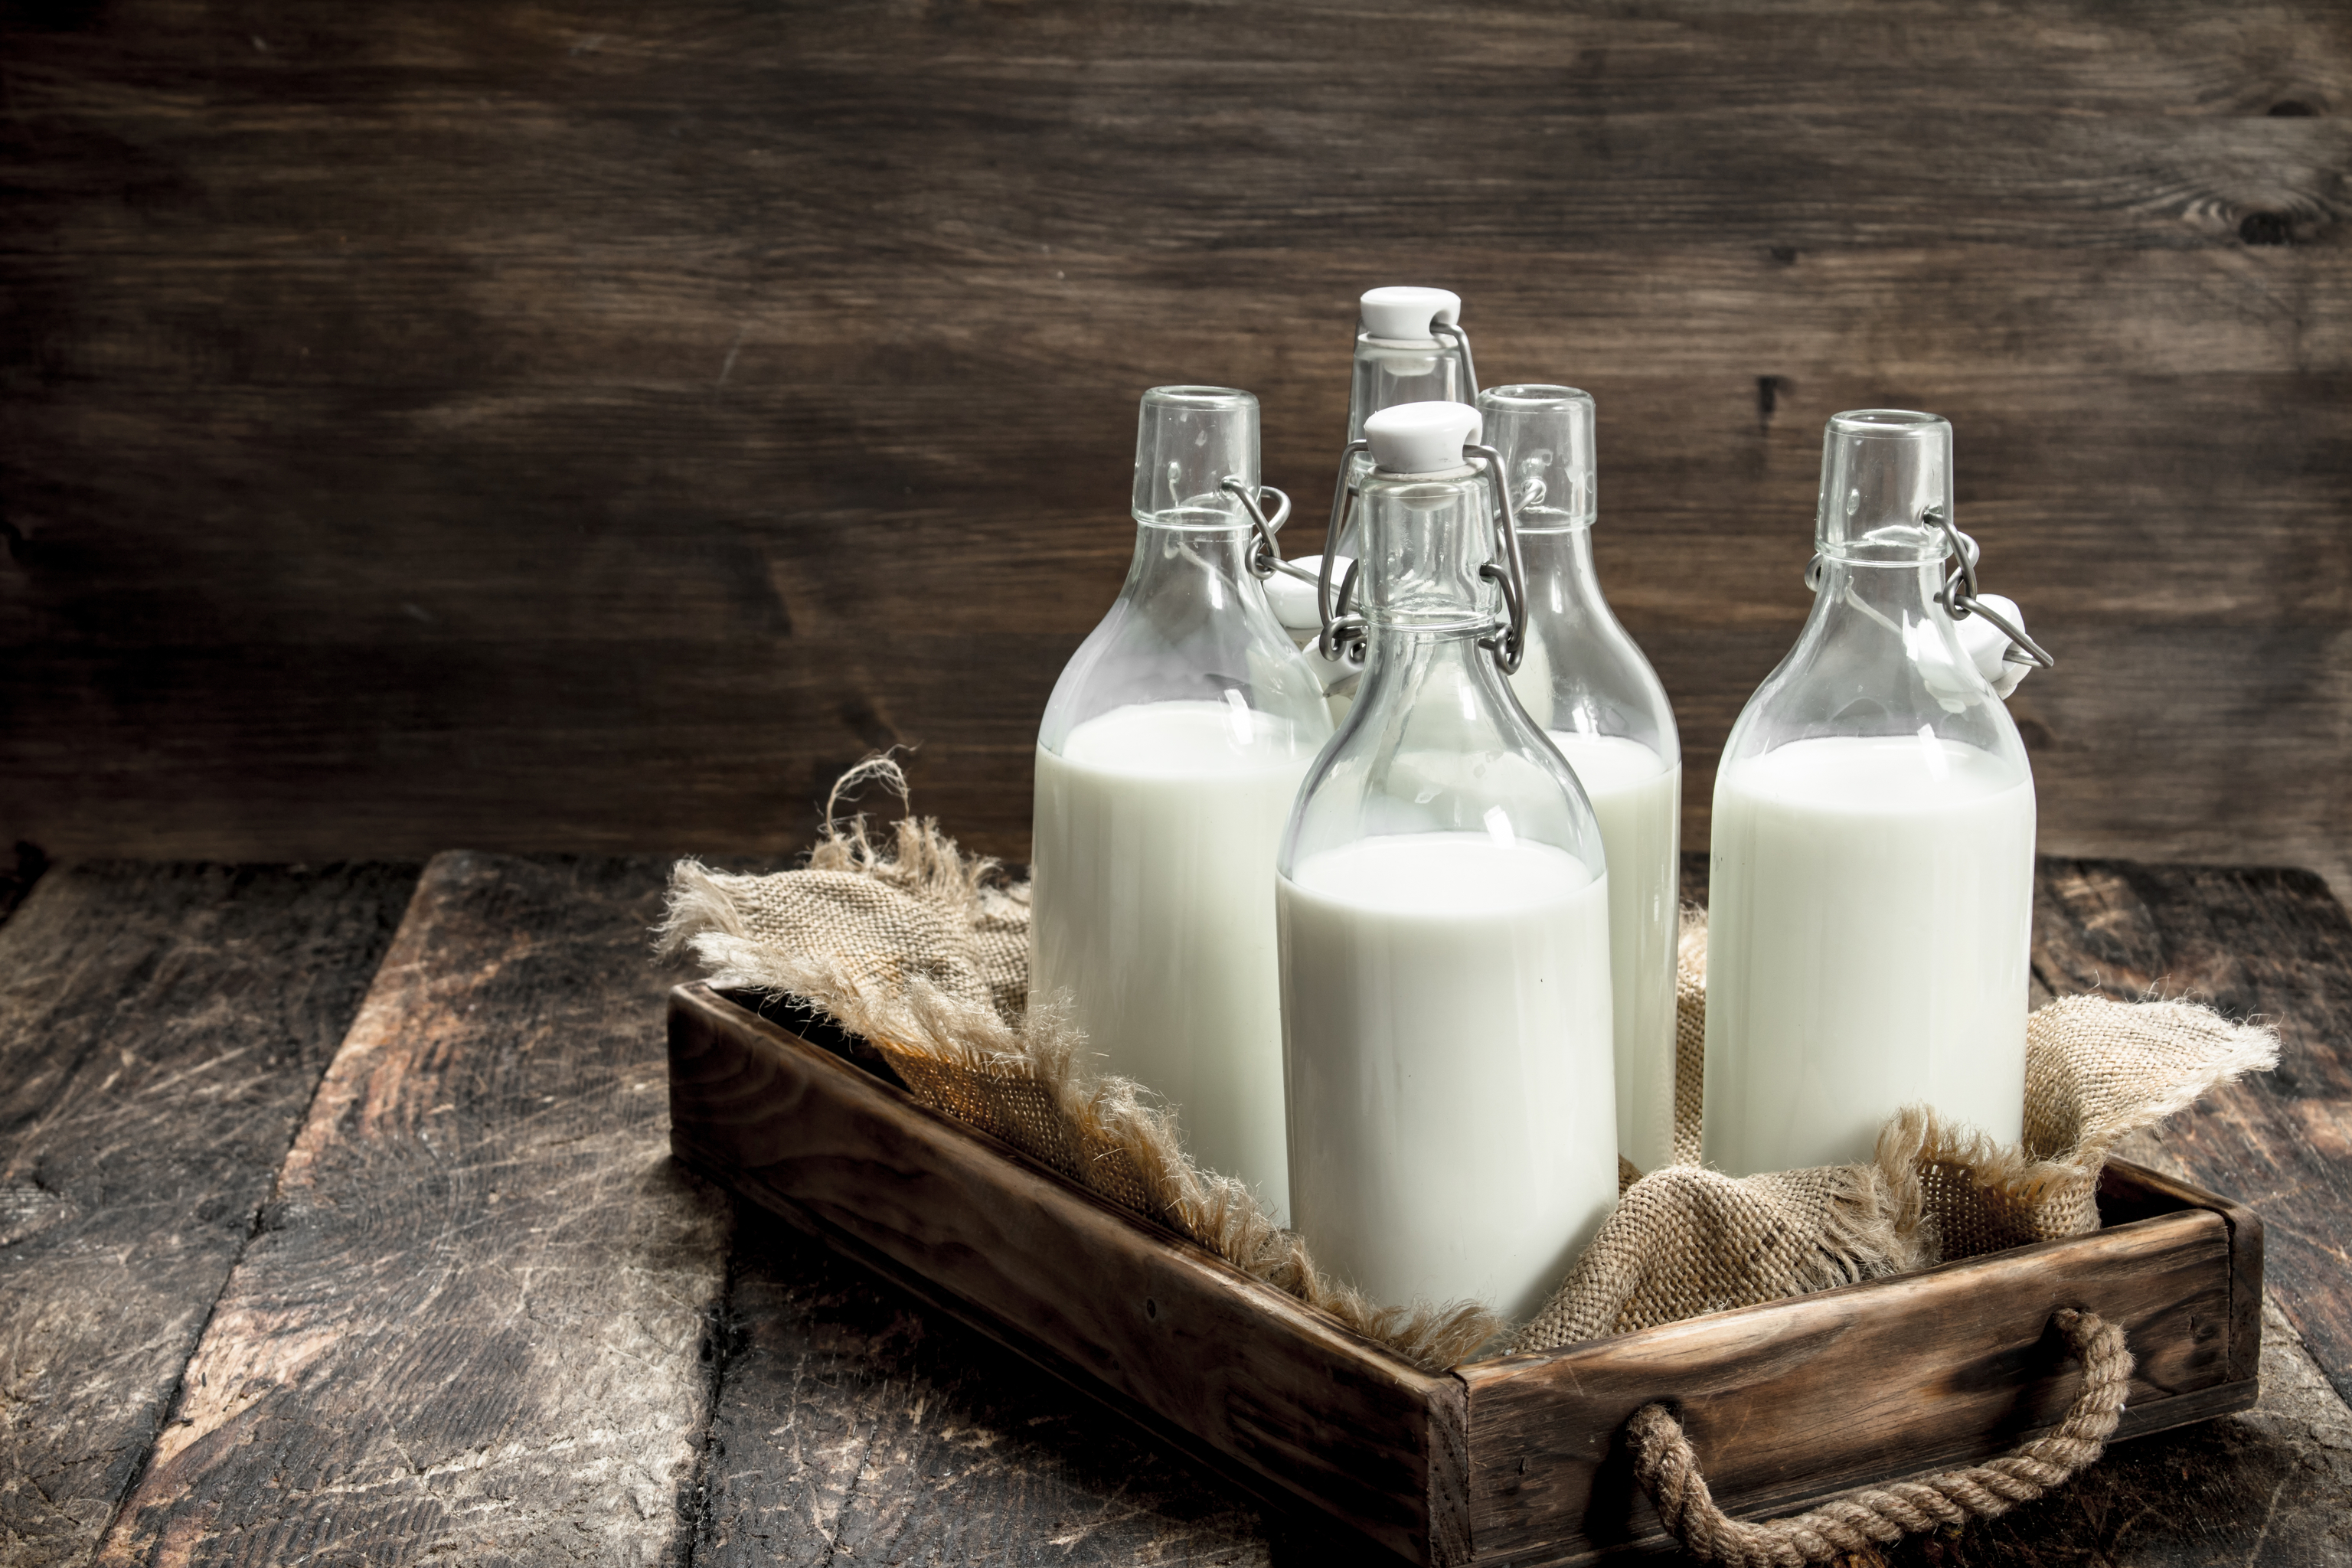 Adems de la leche de origen animal, hay bebidas vegetales. l y la vegetal.